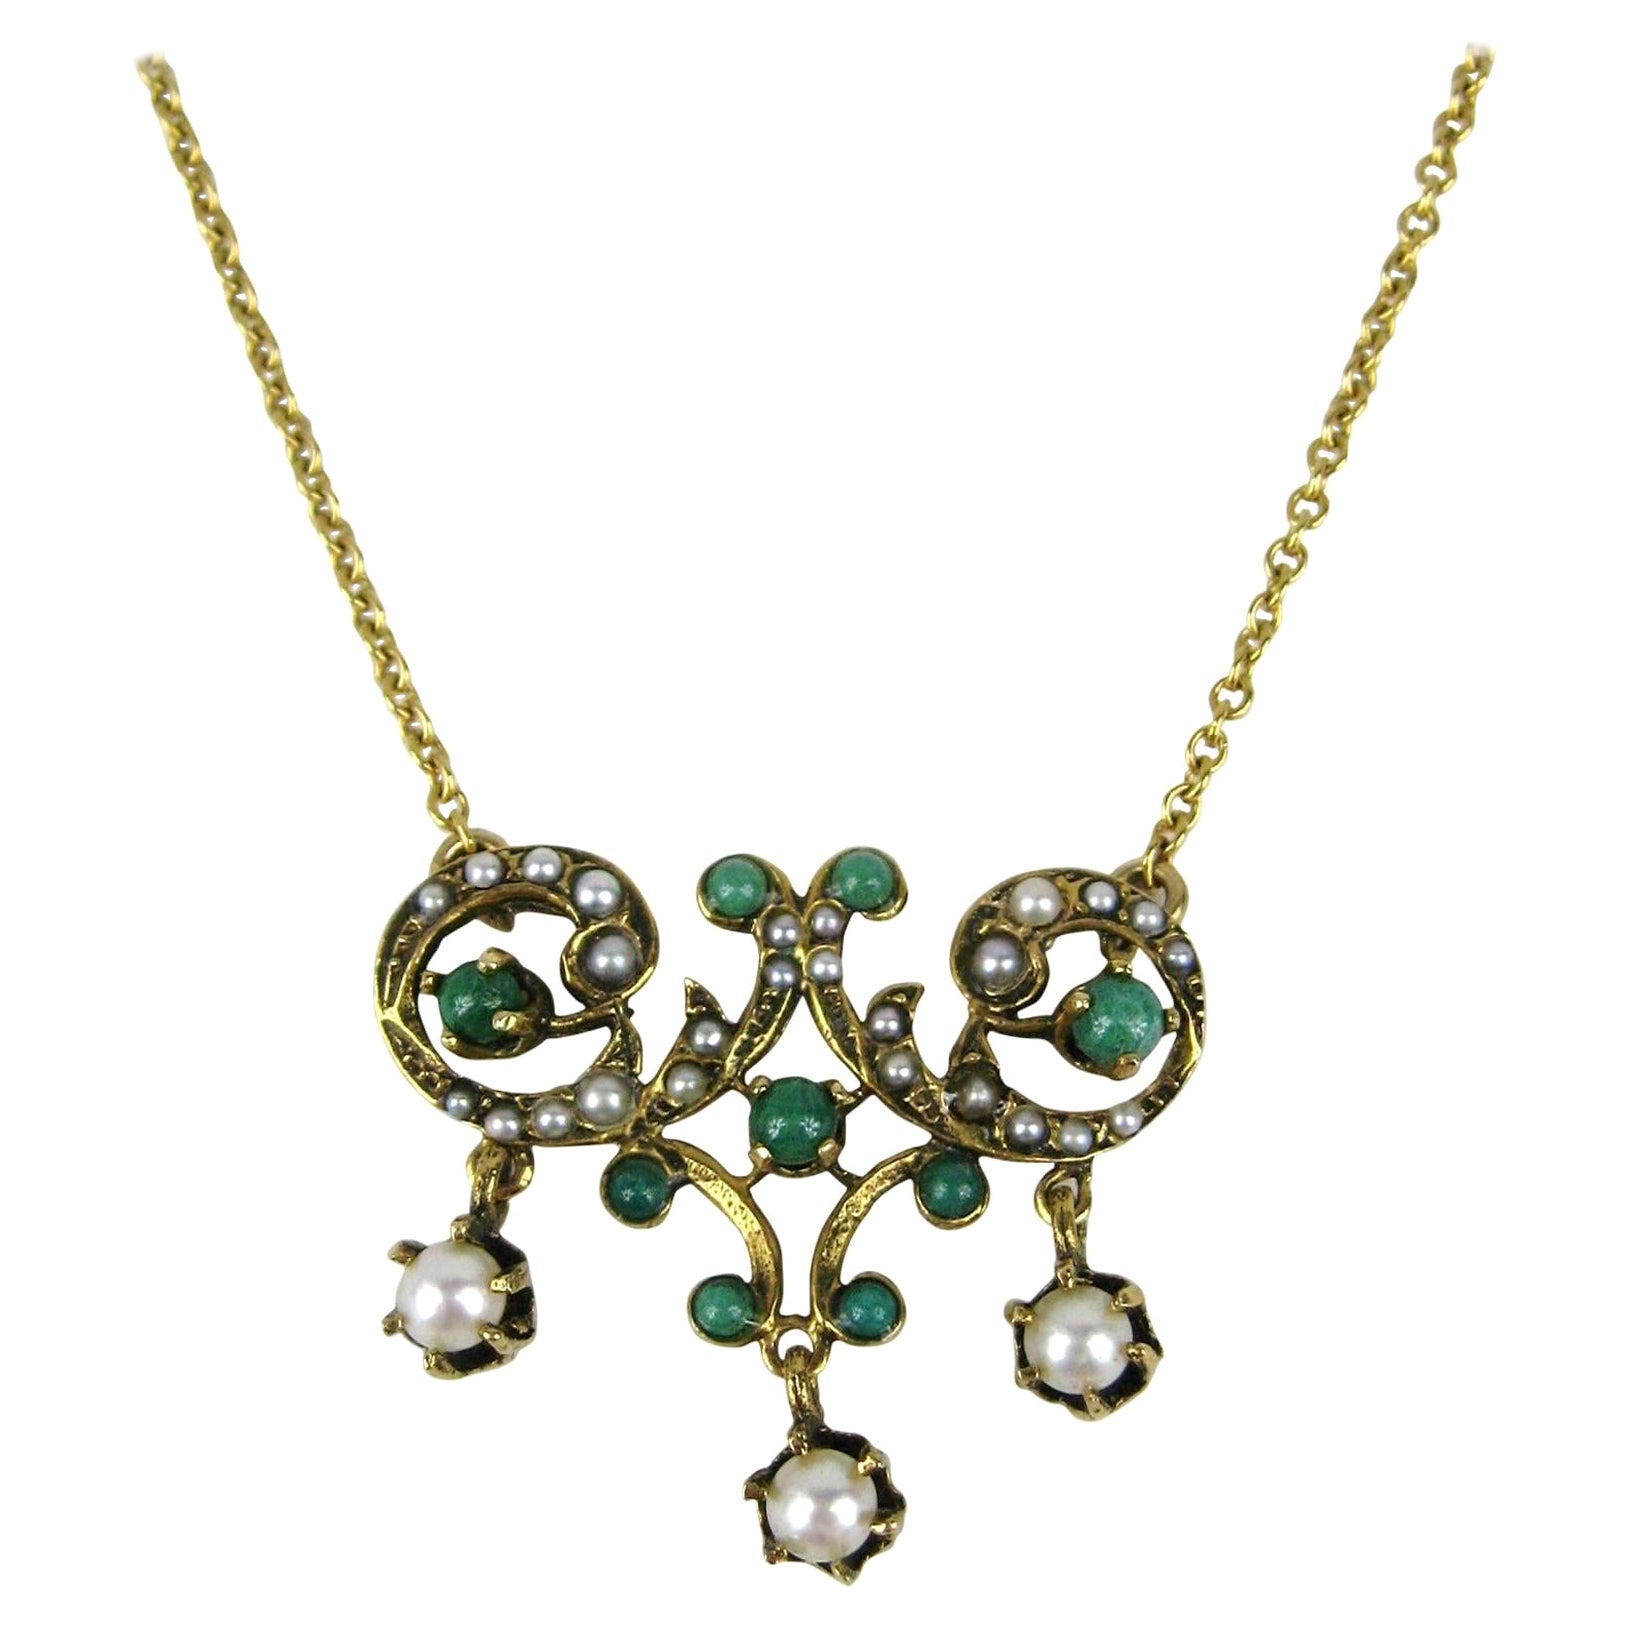 Collier lavallière en or 14 carats avec pendentif Art nouveau et perles